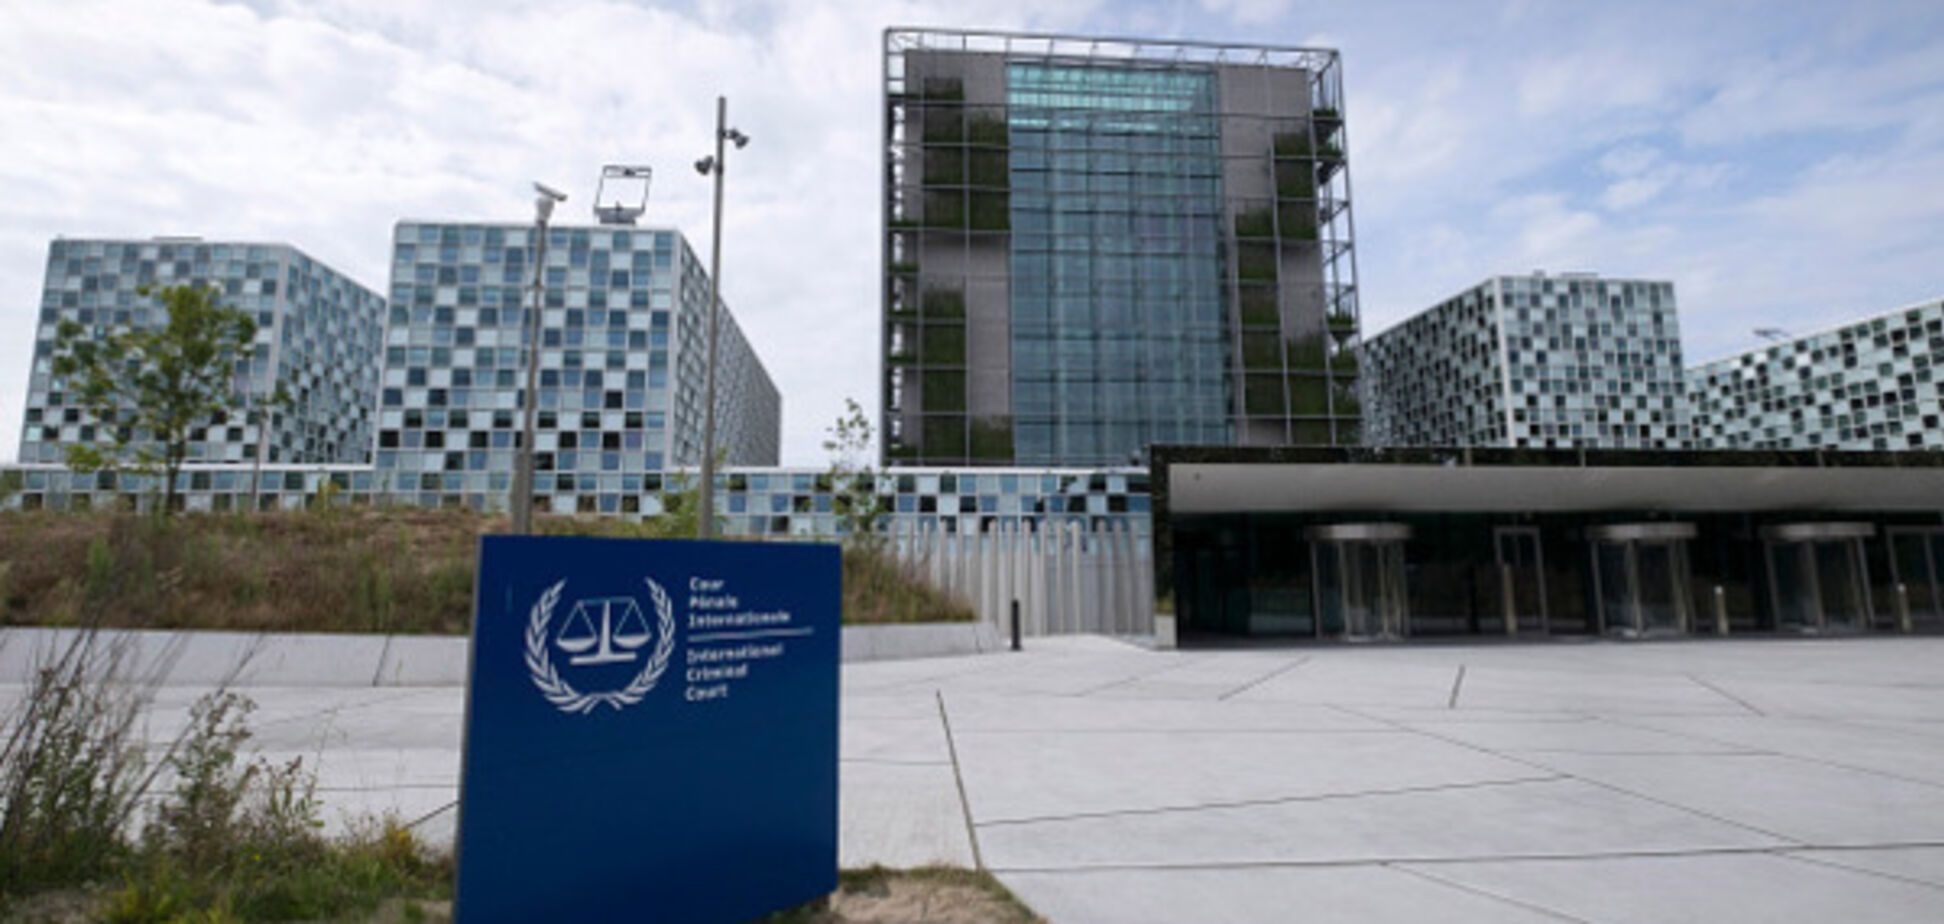 Міжнародний суд ООН у Гаазі